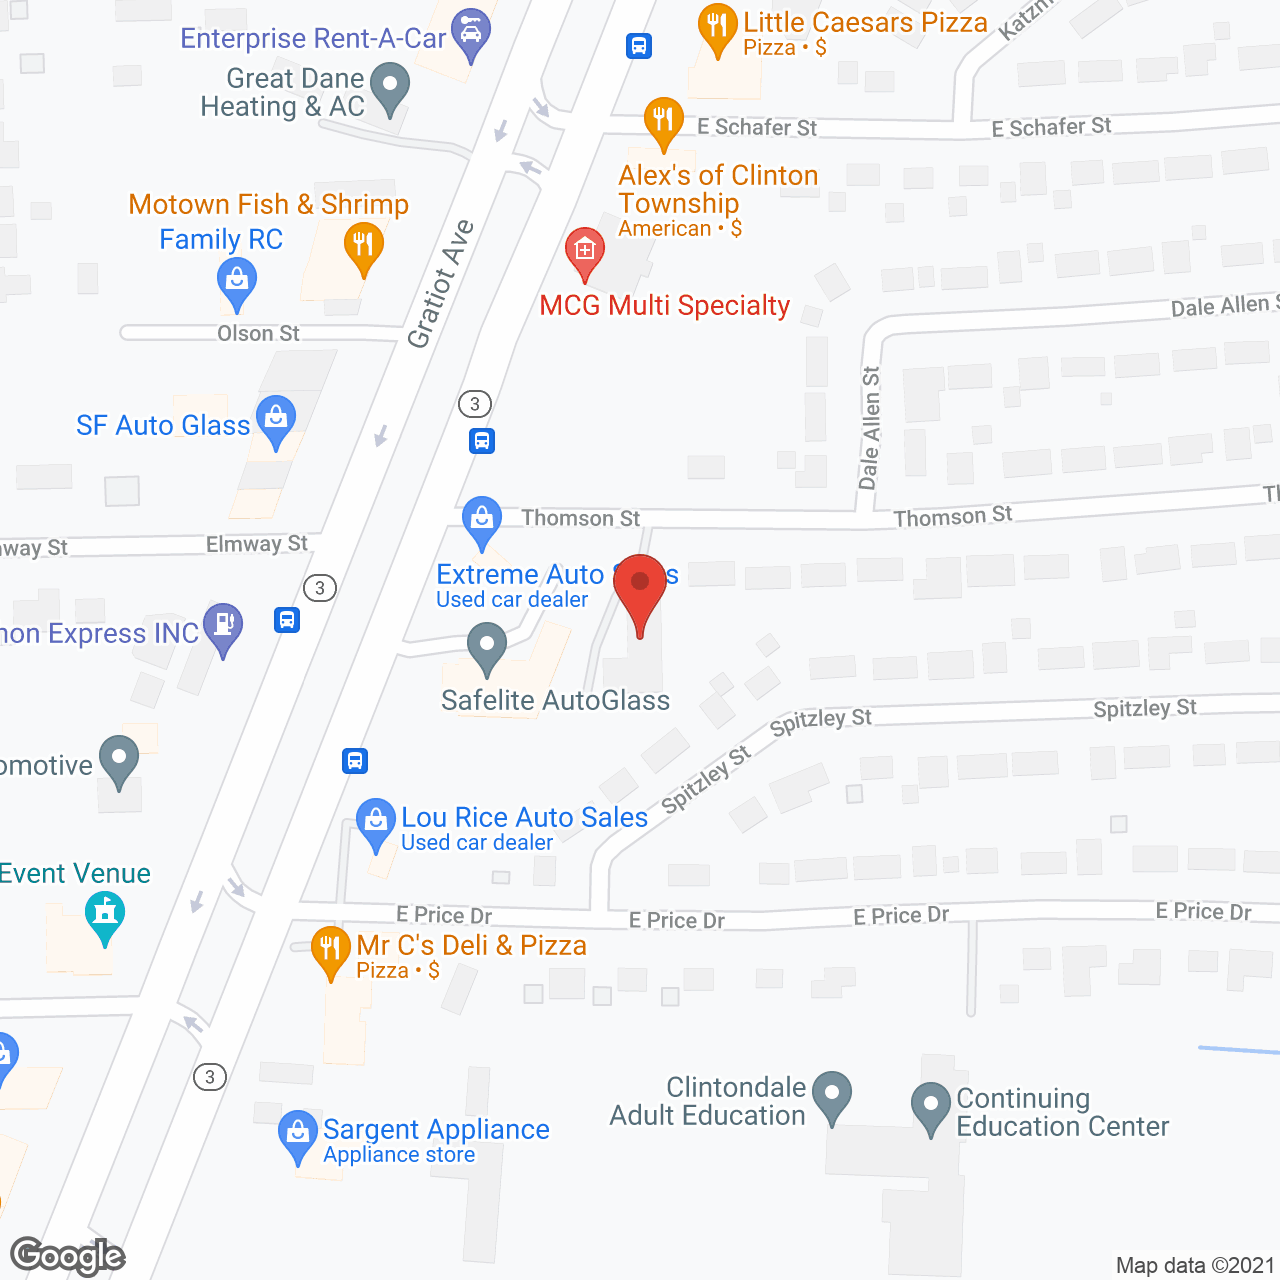 Dawns Center for Seniors in google map